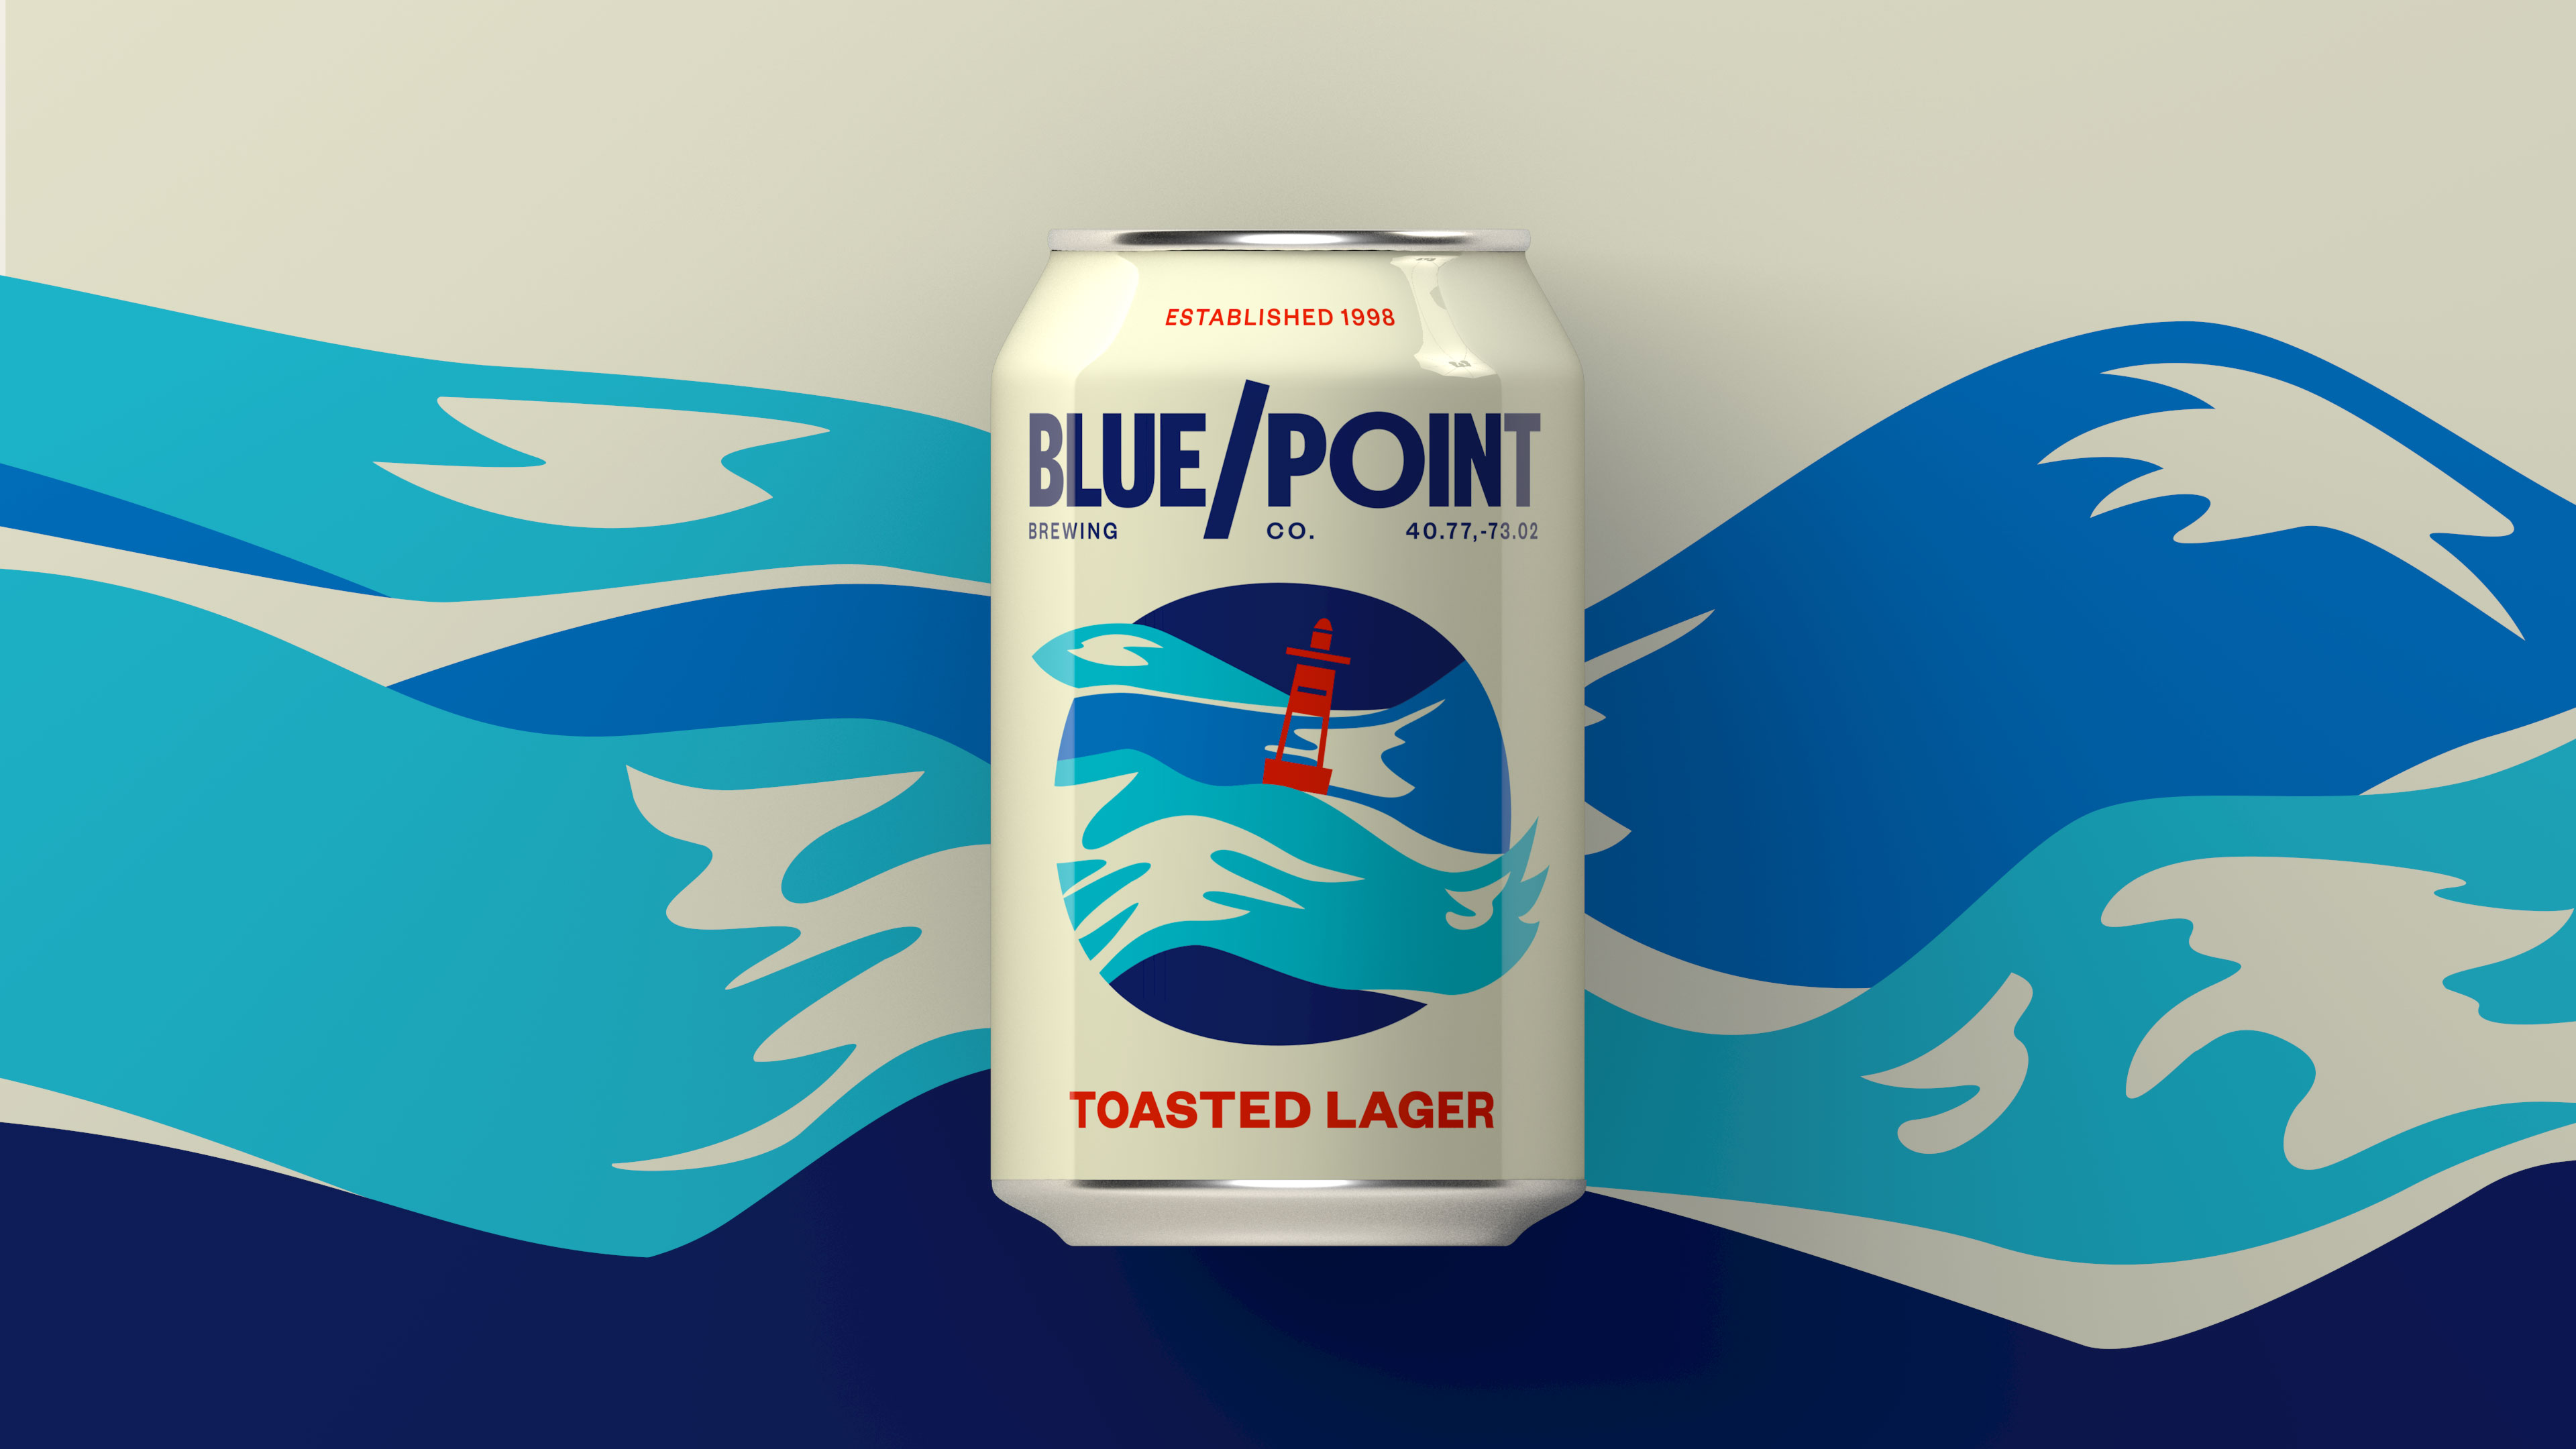 欣赏一组国外精酿啤酒外包装设计，Blue Point精酿啤酒产品设计。